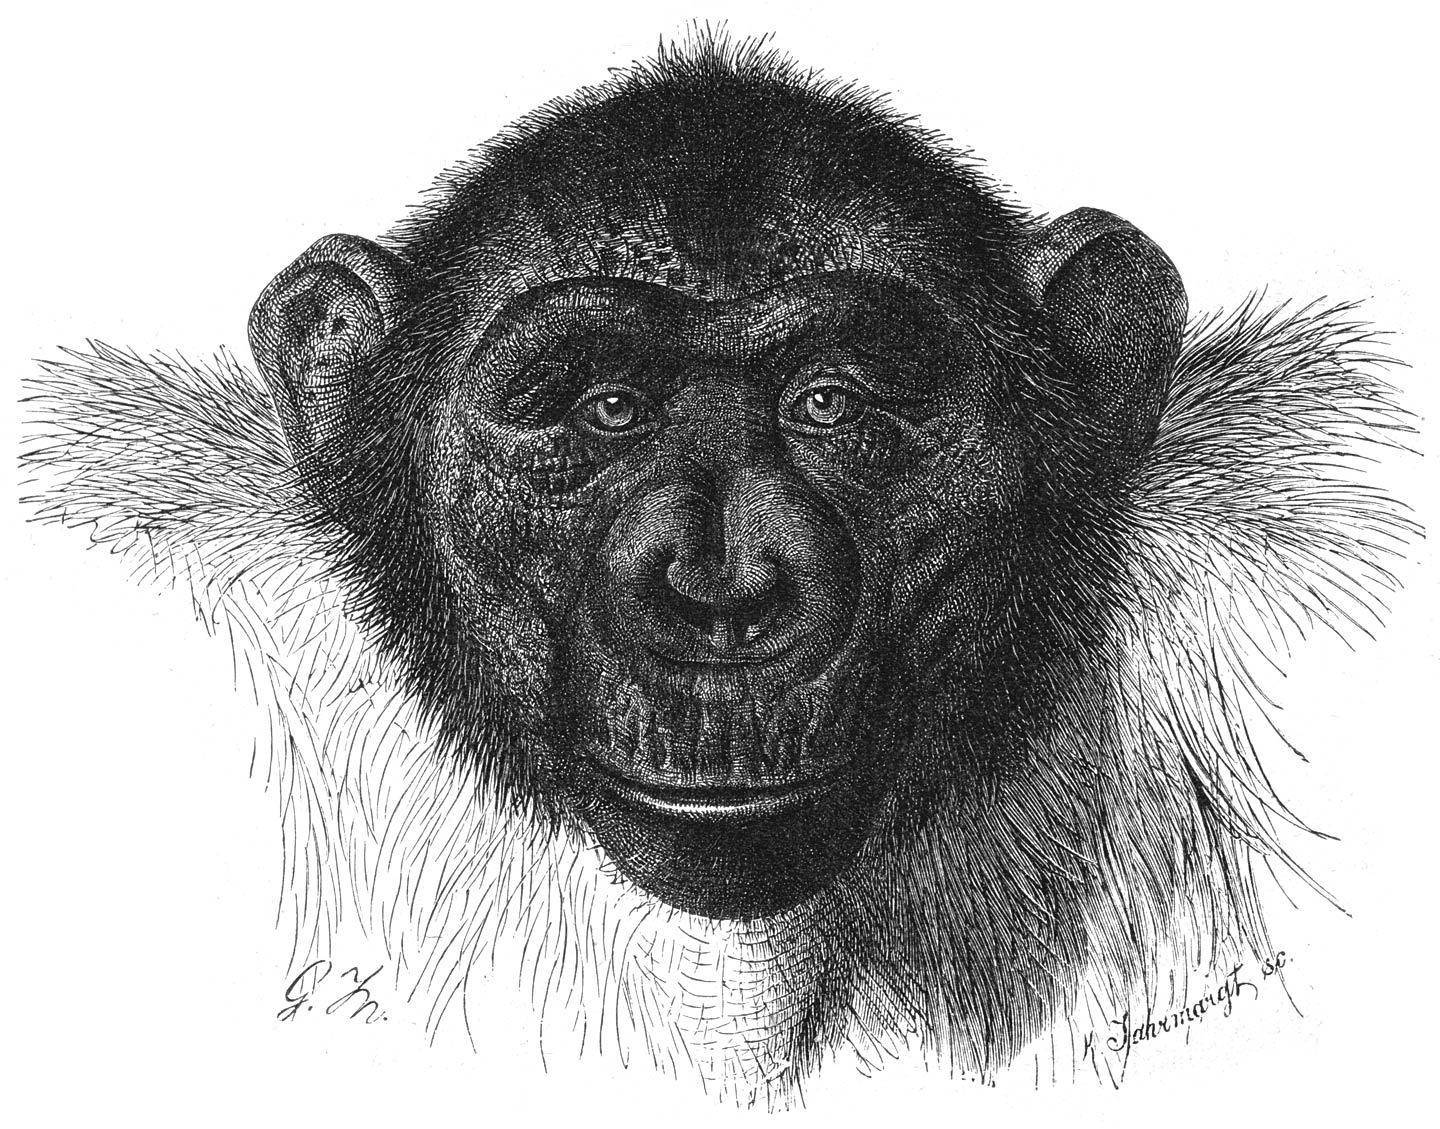 Chimpanzee (Simia troglodytes).